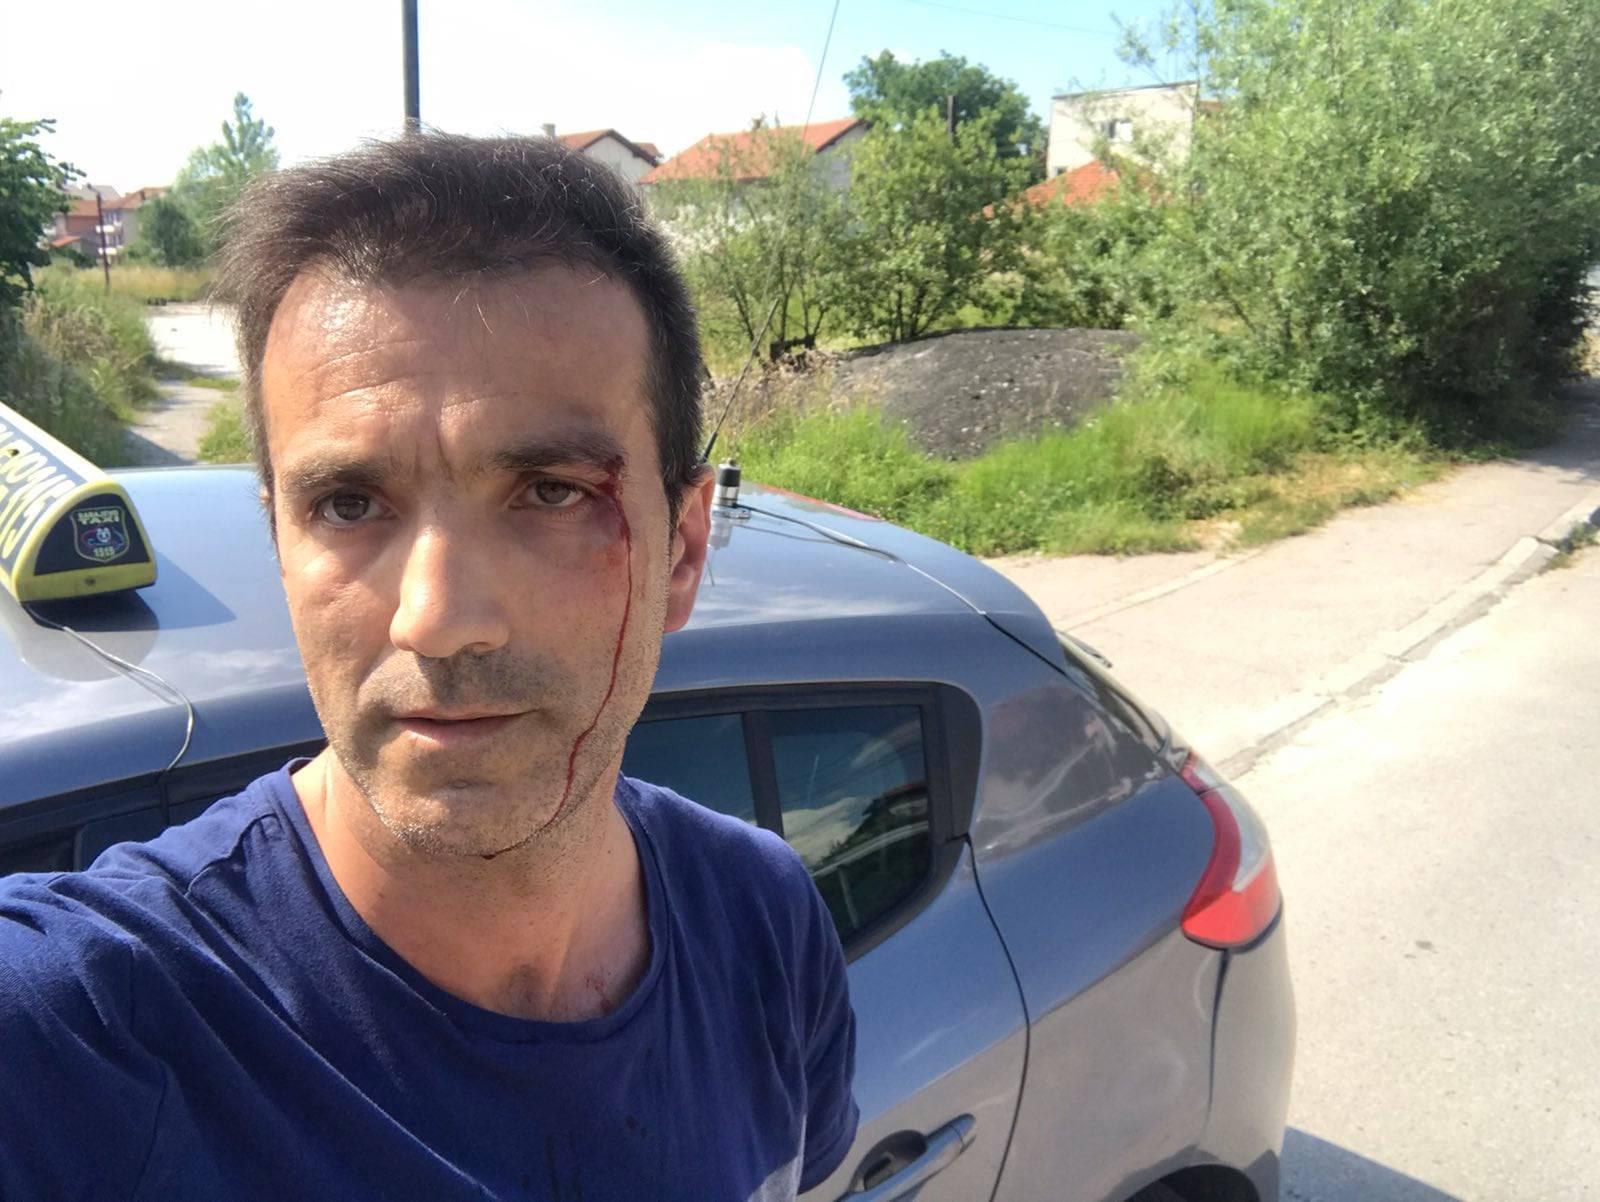 Napadnuti taksista Mirza Geljo: Udarali su me šakama u lice dok nisam uspio da se izvučem